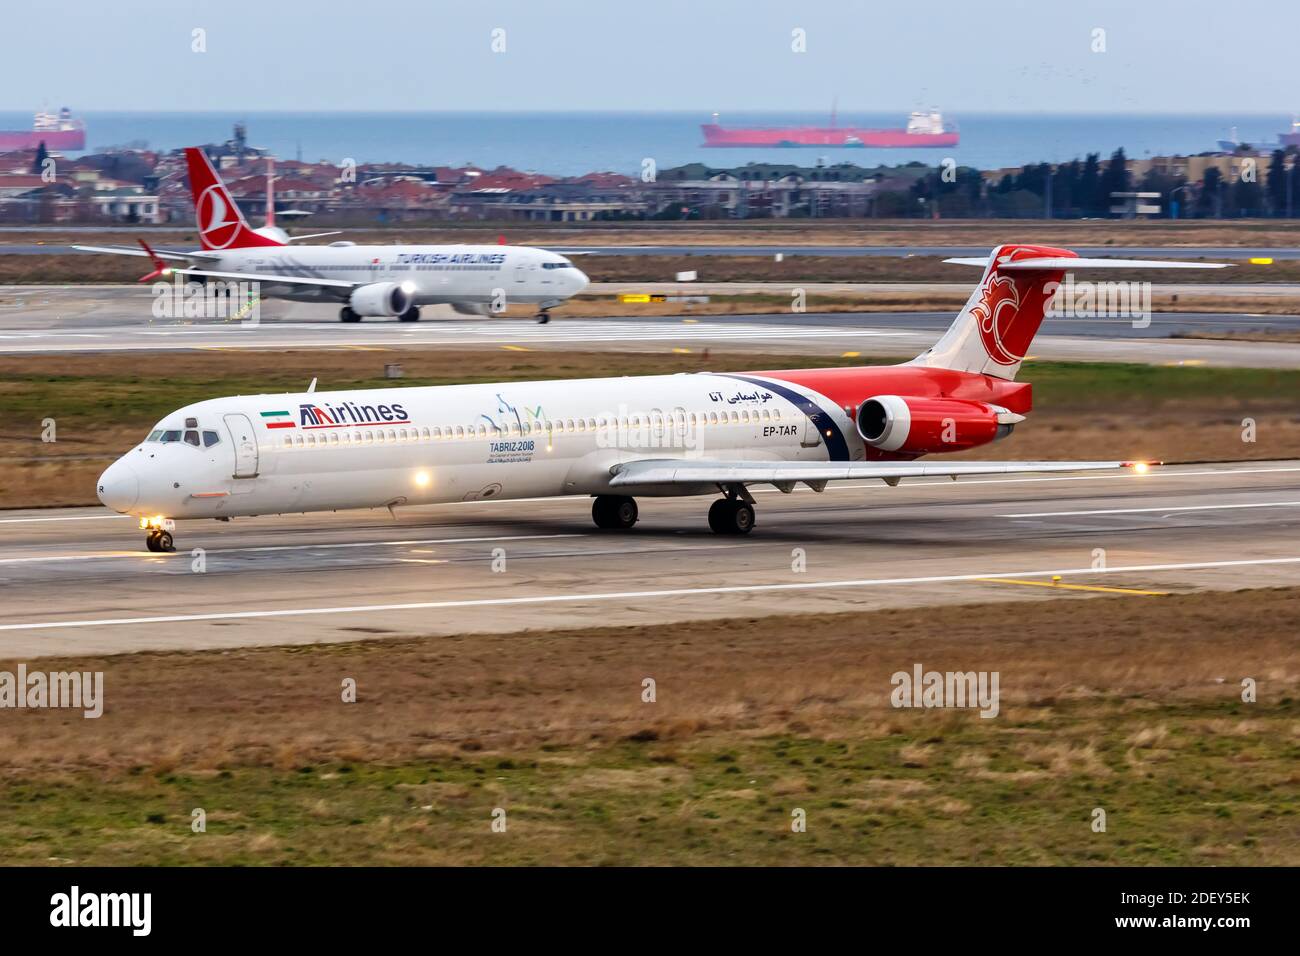 Istanbul, Turchia - 15 febbraio 2019: ATA Airlines McDonnell Douglas MD-83 aereo all'aeroporto Ataturk di Istanbul (IST) in Turchia. Foto Stock